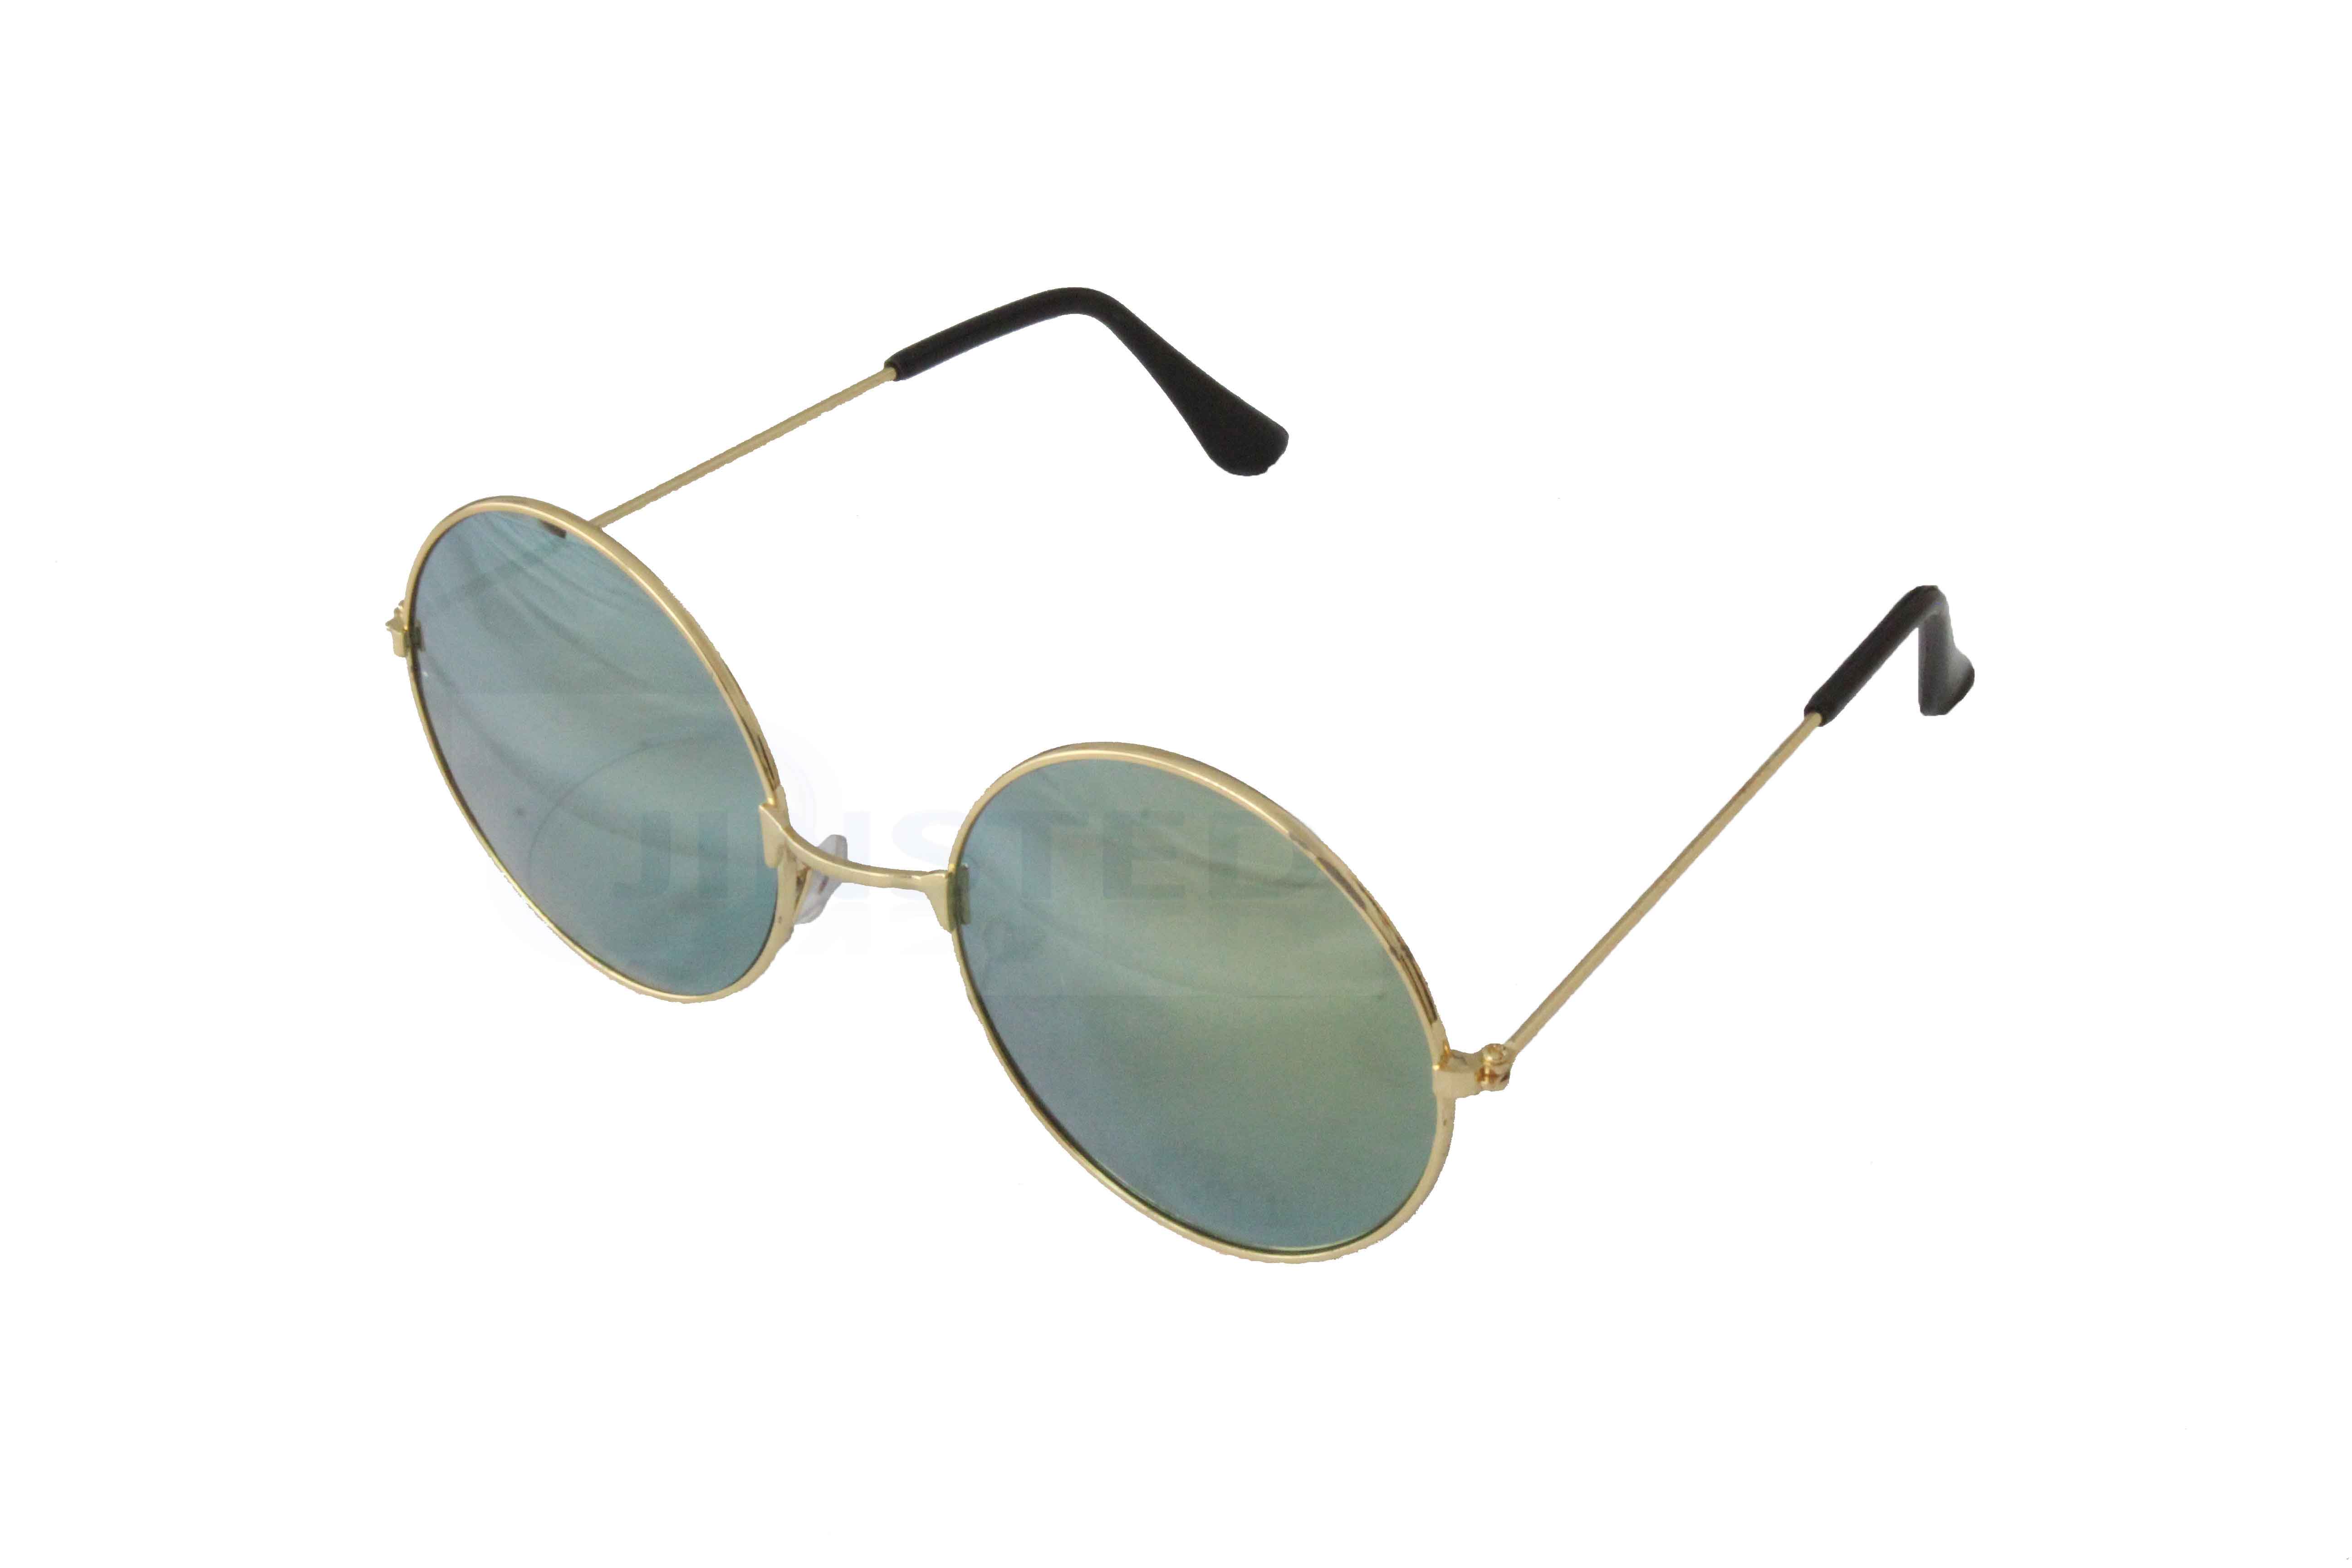 teashade sunglasses